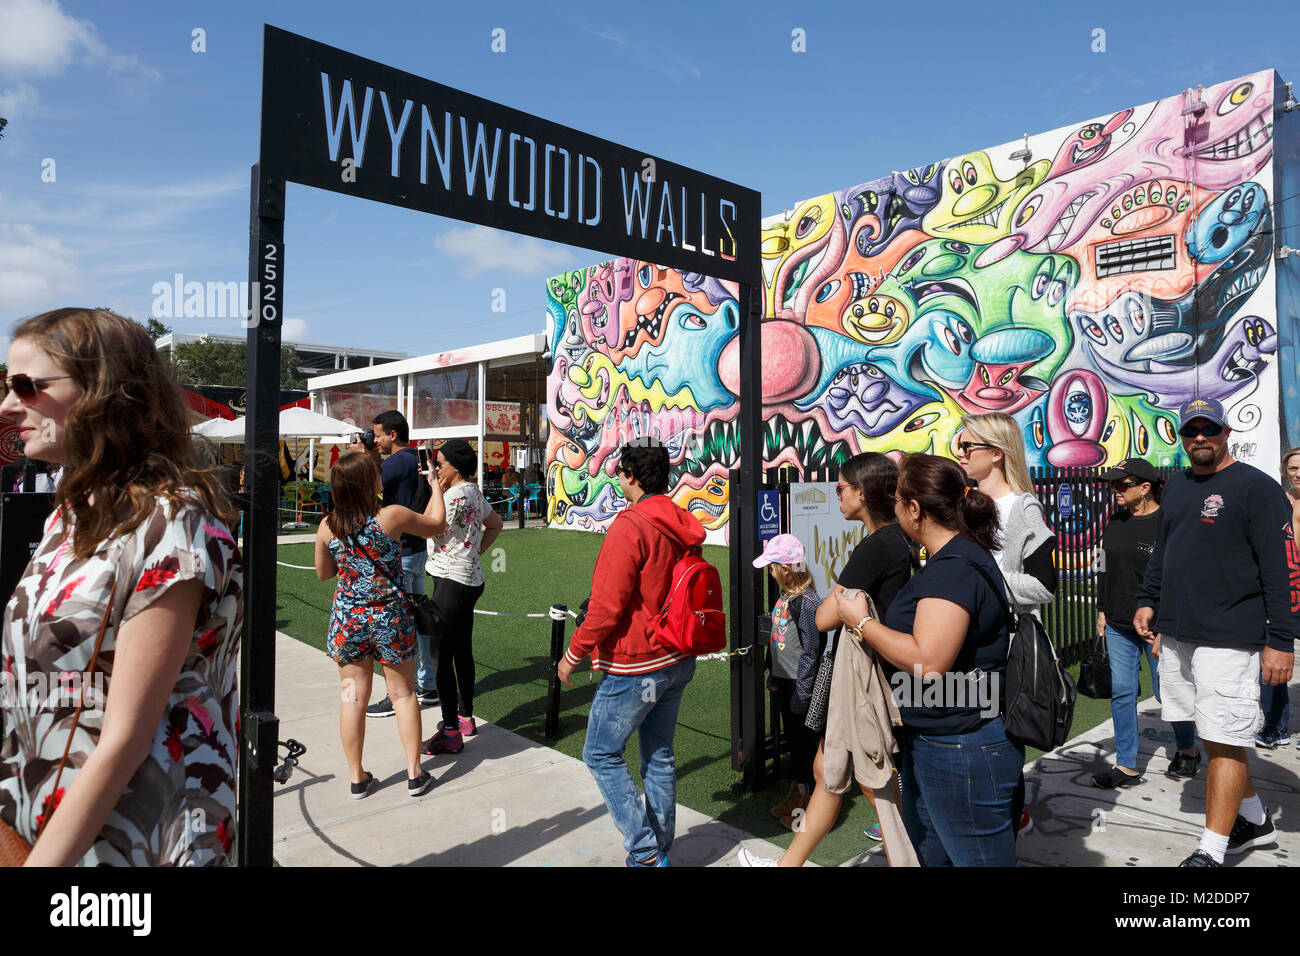 Pareti Wynwood graffiti art exhibition installazione, Miami, Florida Foto Stock